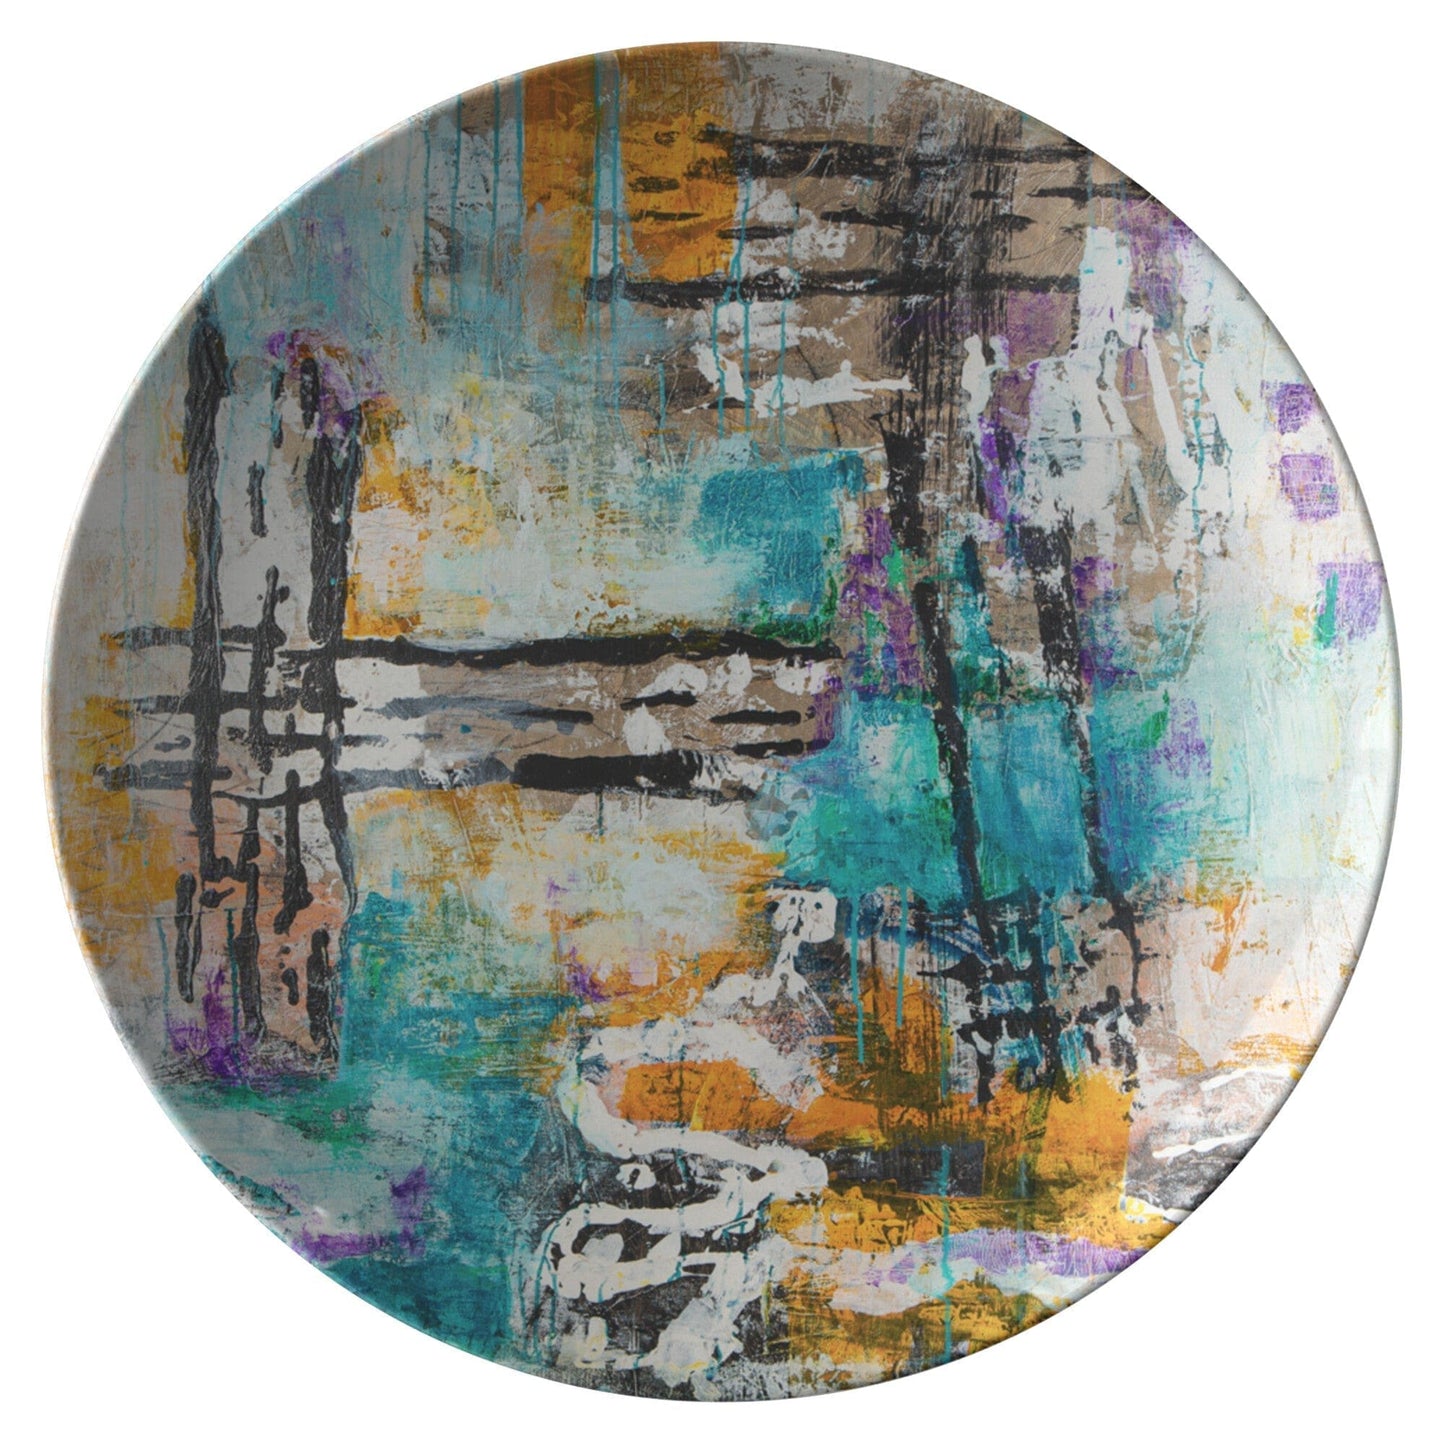 Kate McEnroe New York Dinner Plates in Modern Abstract Art Plates